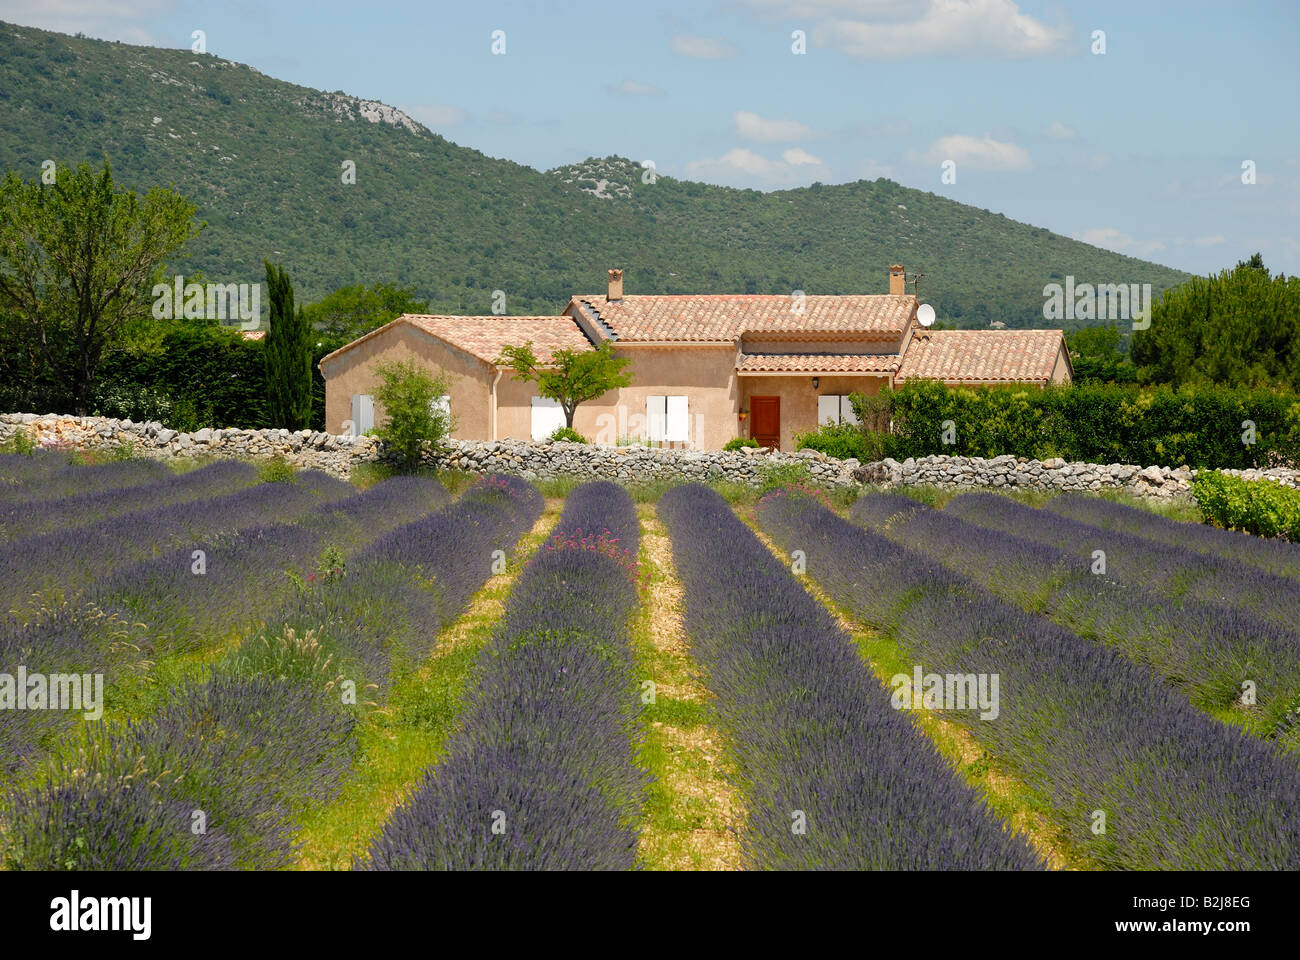 Ferme et champ de lavande en Provence, France Banque D'Images